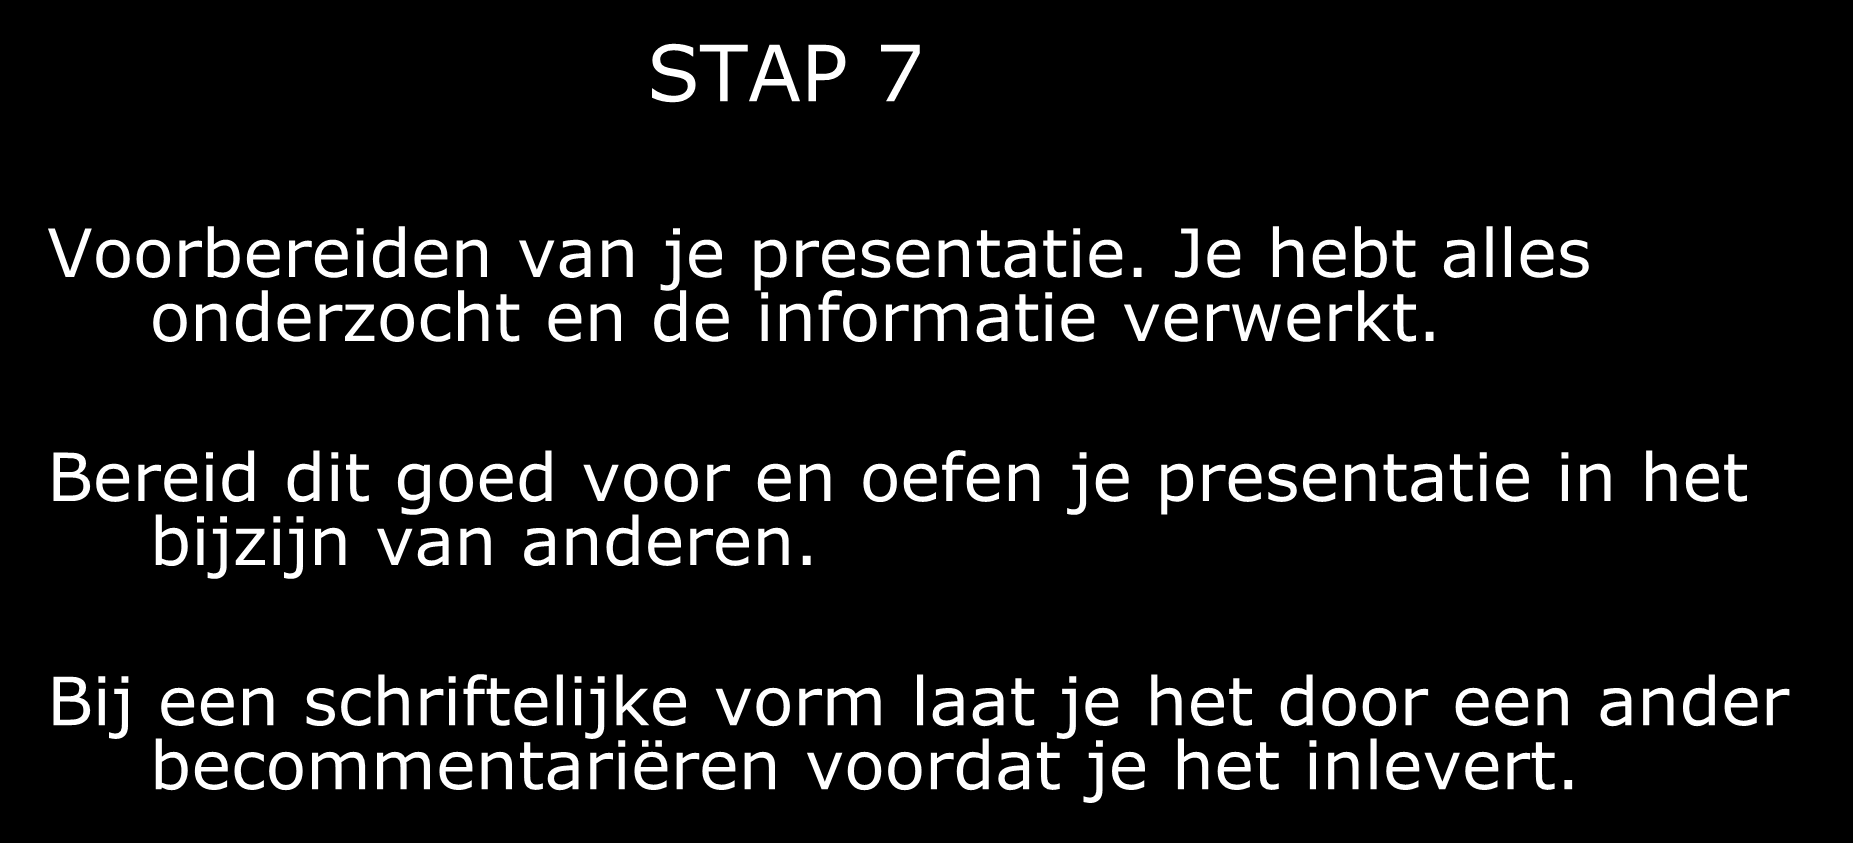 STAP 7 Voorbereiden van je presentatie. Je hebt alles onderzocht en de informatie verwerkt.